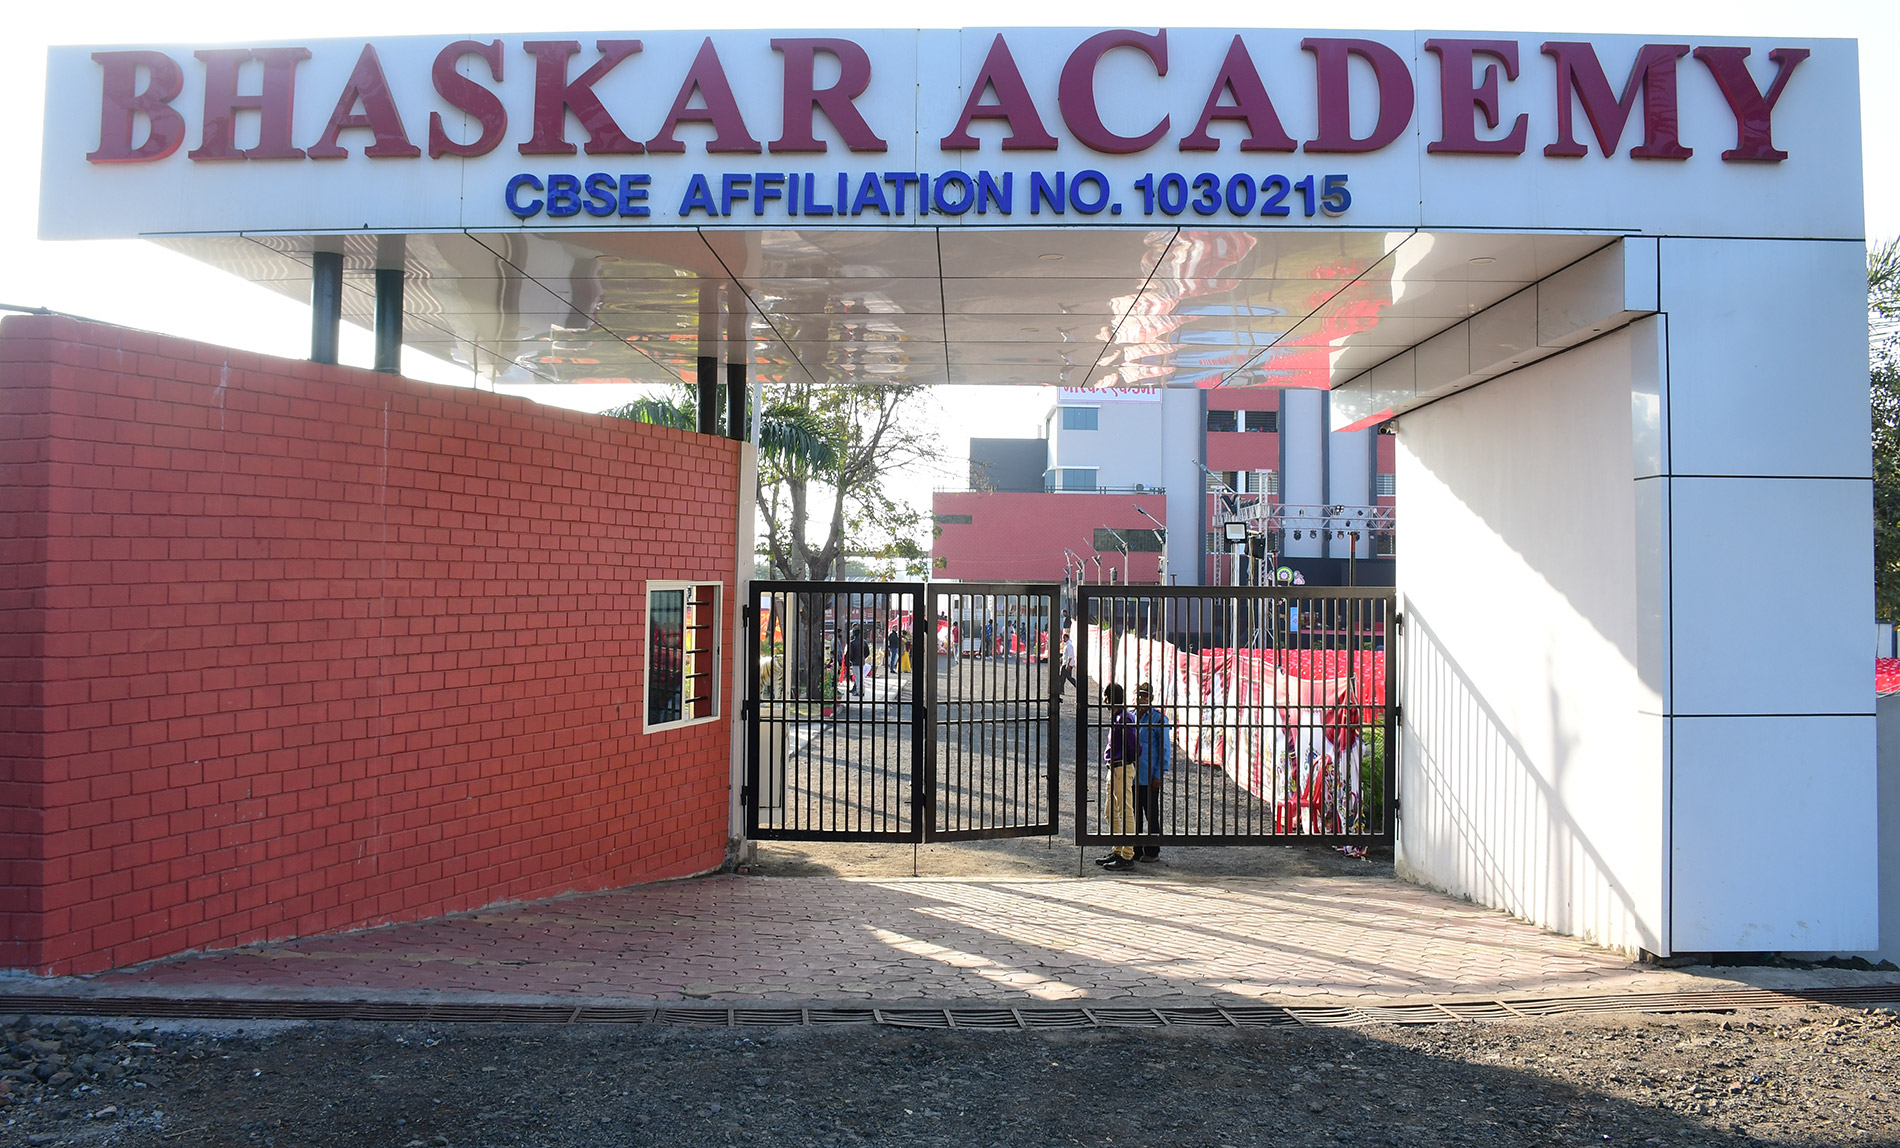 Bhaskar Academy- Welcome to Bhaskar Academy